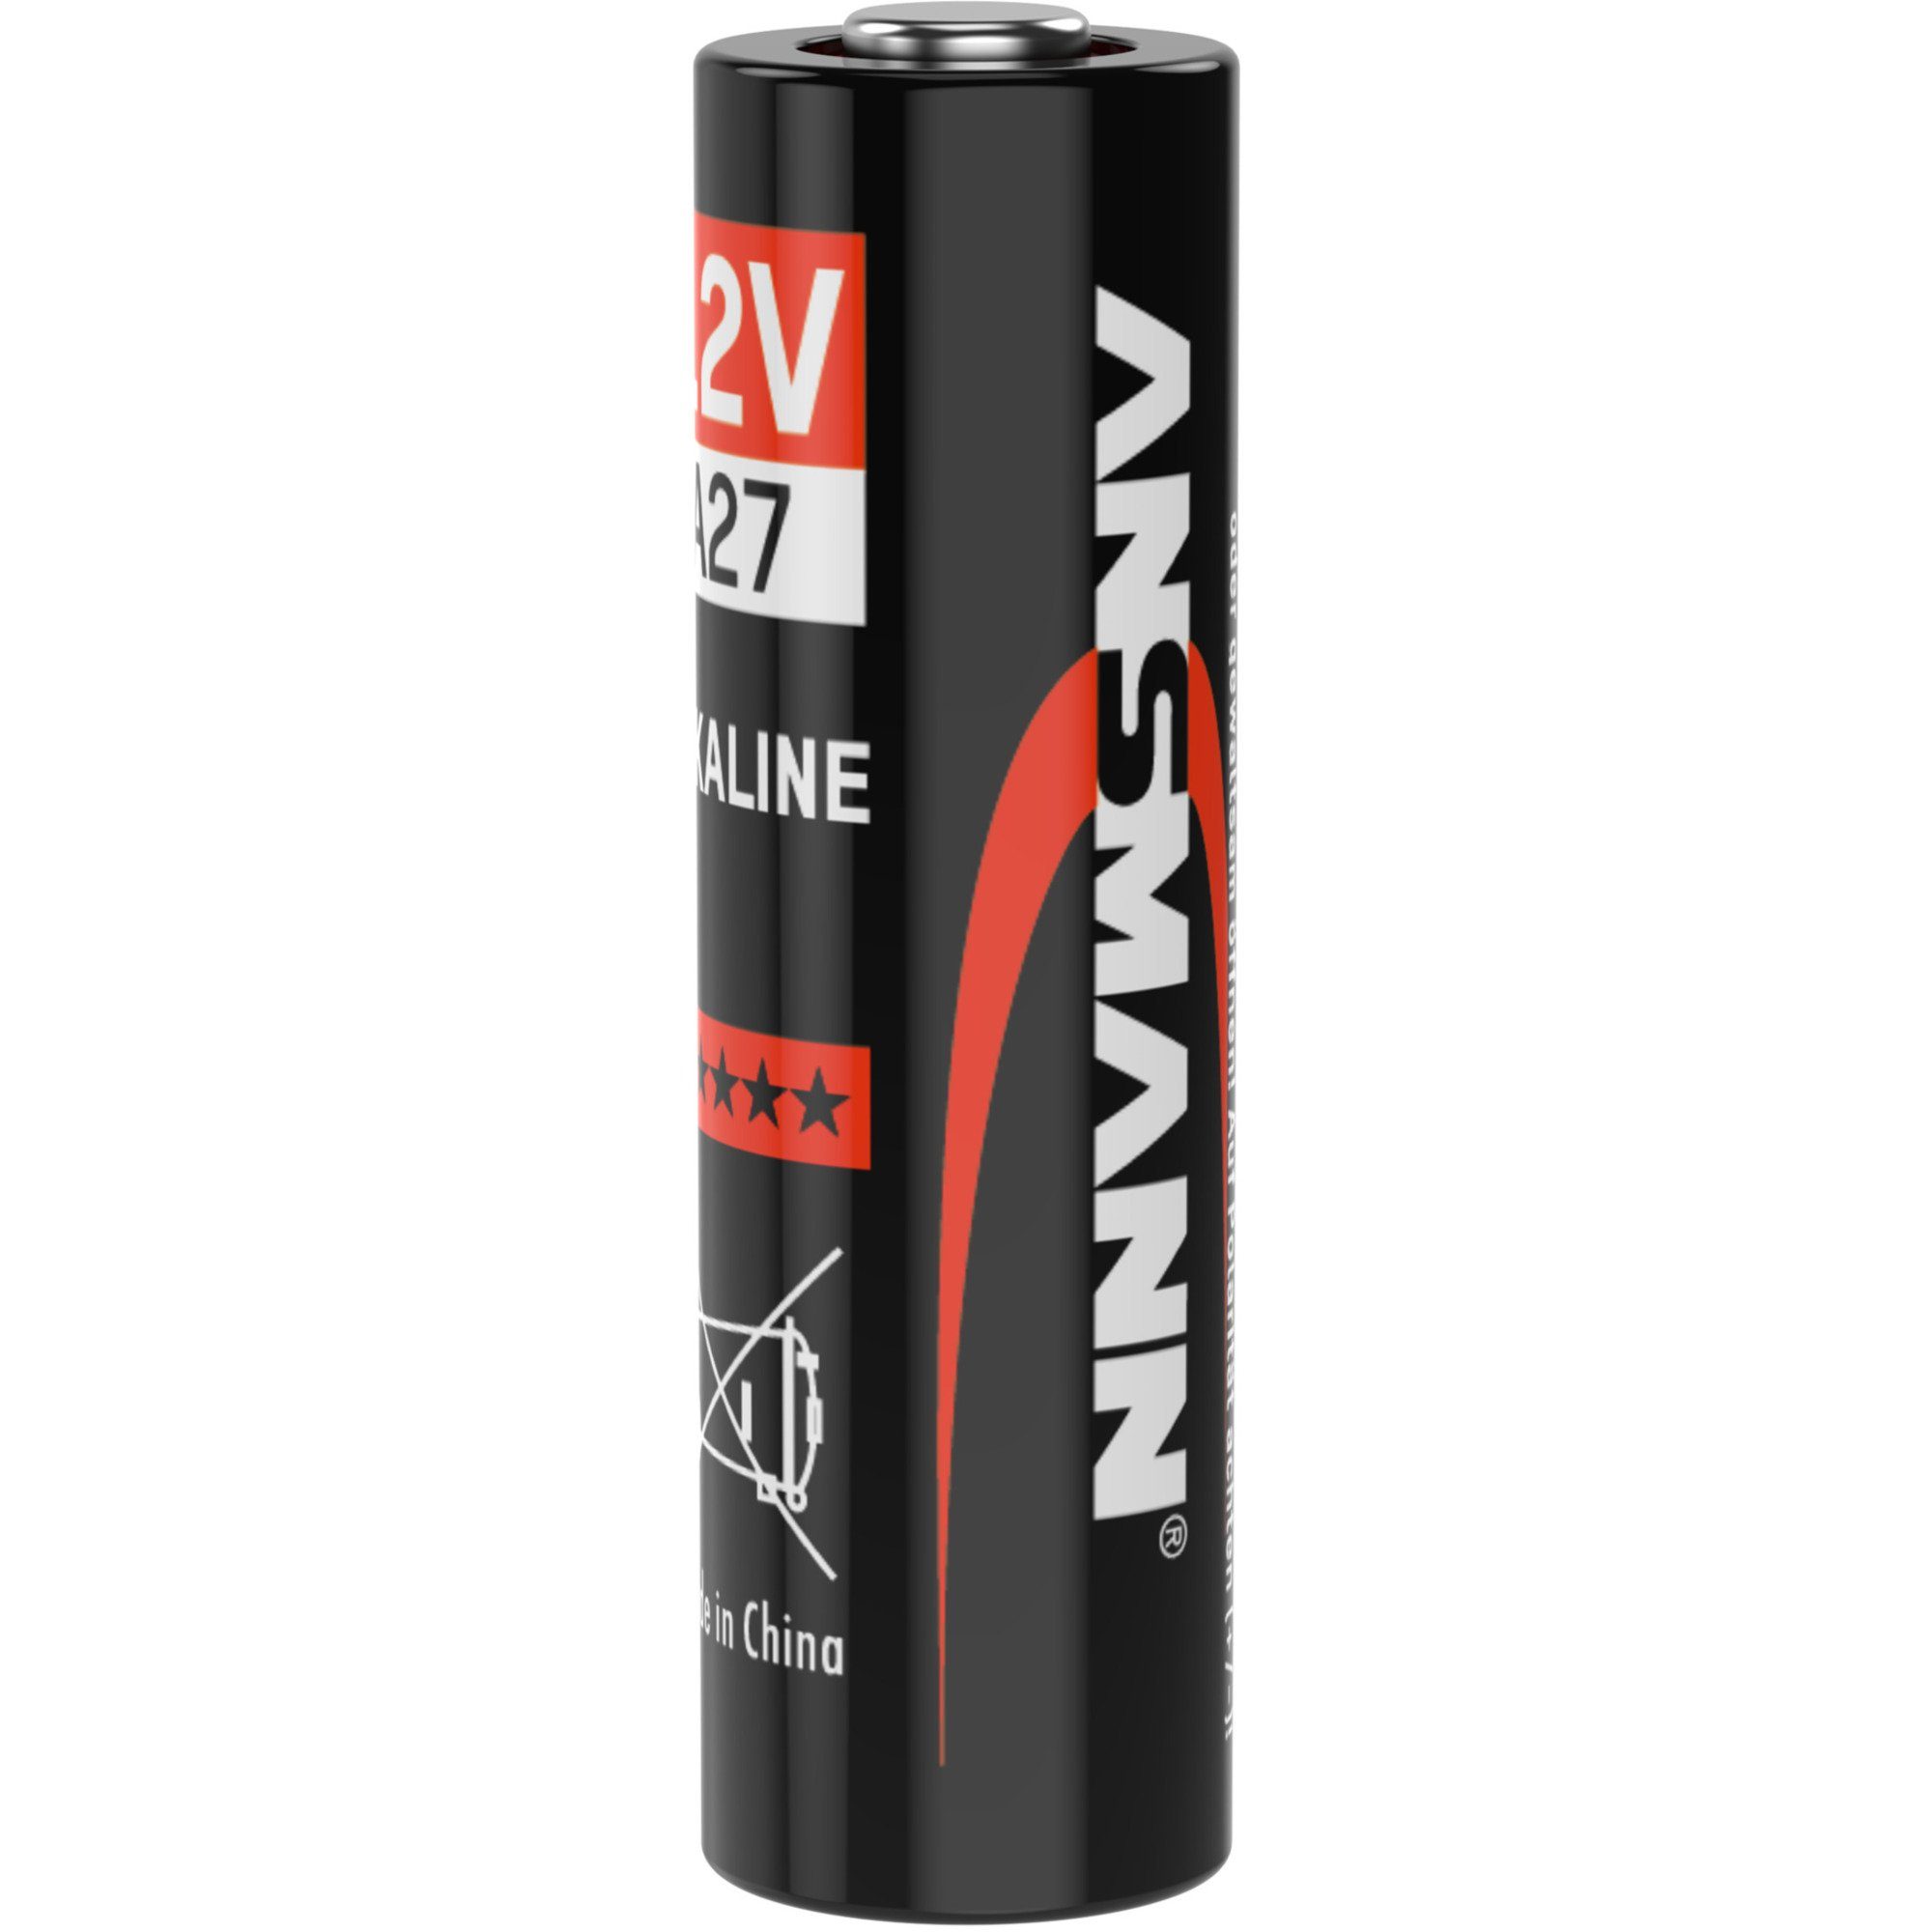 Ansmann A27, ANSMANN® Batterie Batterie